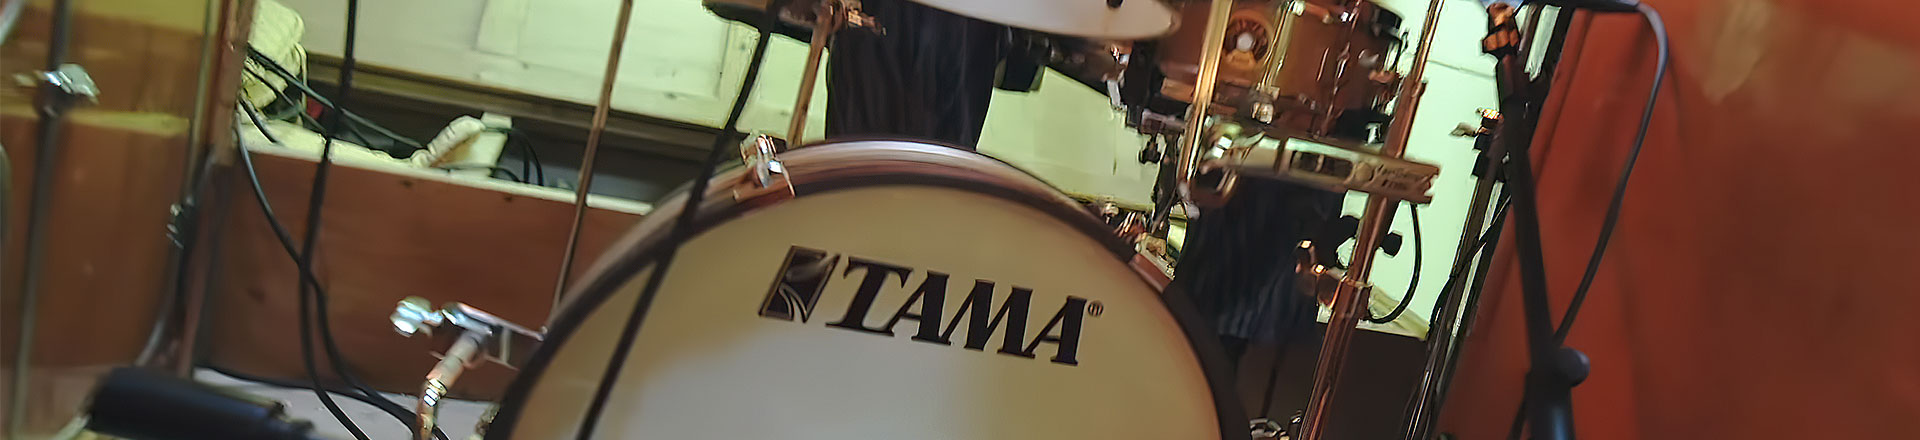 Najbardziej kompaktowy zestaw perkusyjny od TAMA. Club-Jam Pancake